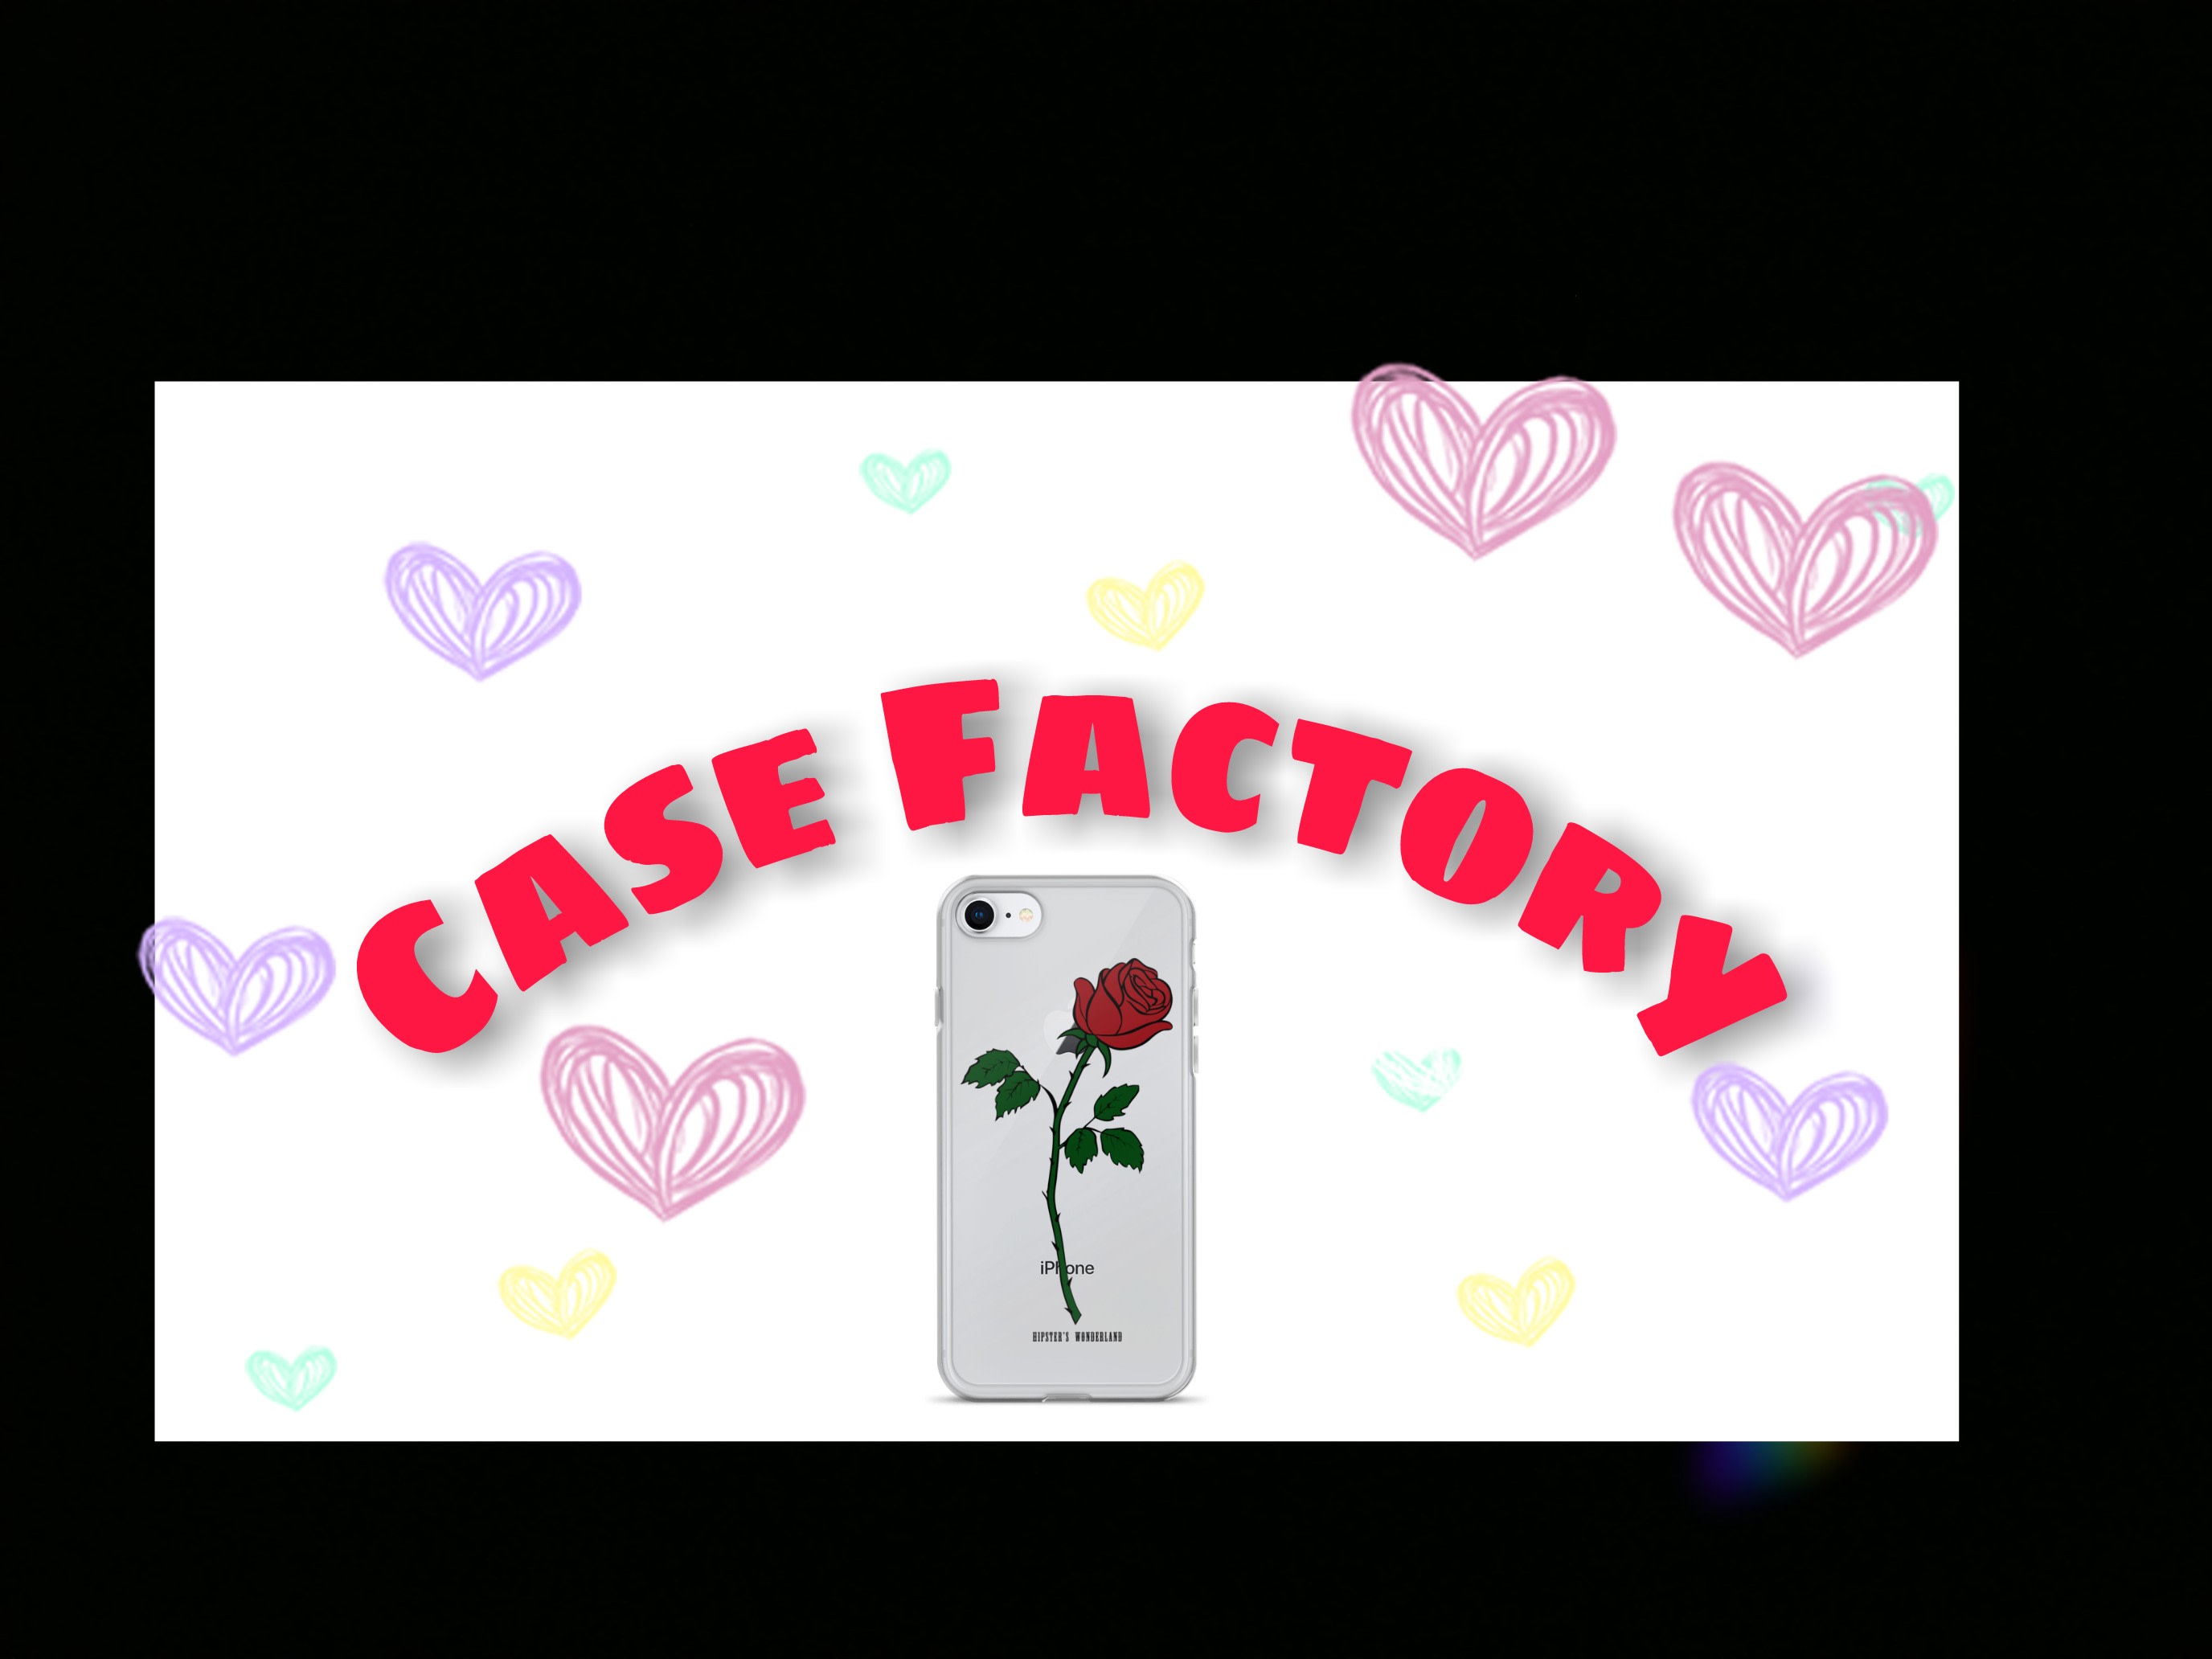 Case Factory